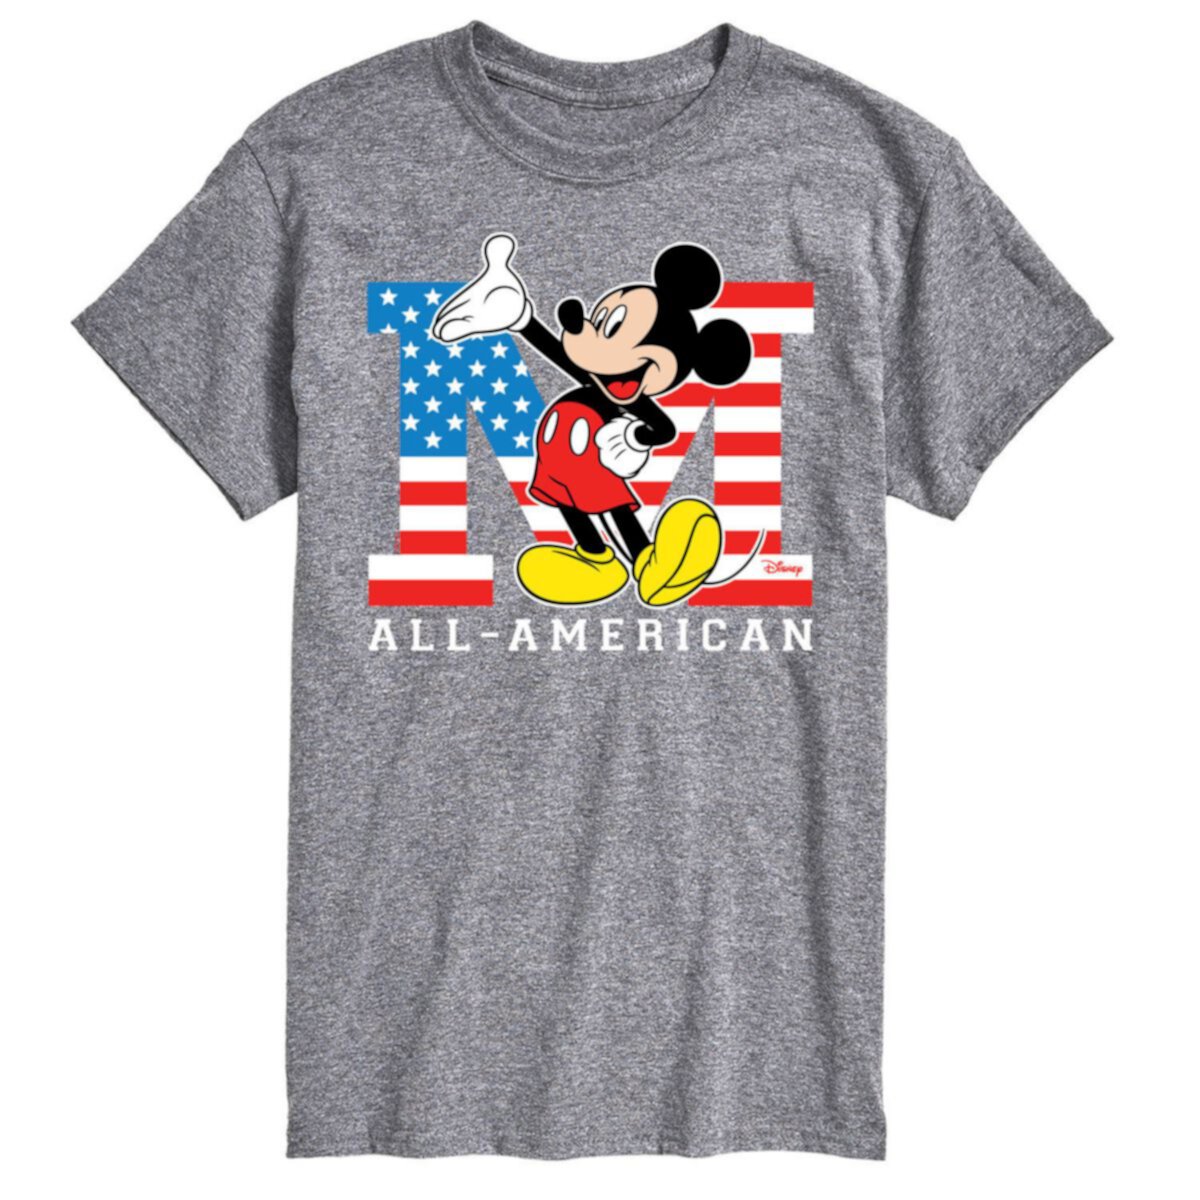 Большая и высокая футболка с американским рисунком Микки Мауса Disney's License